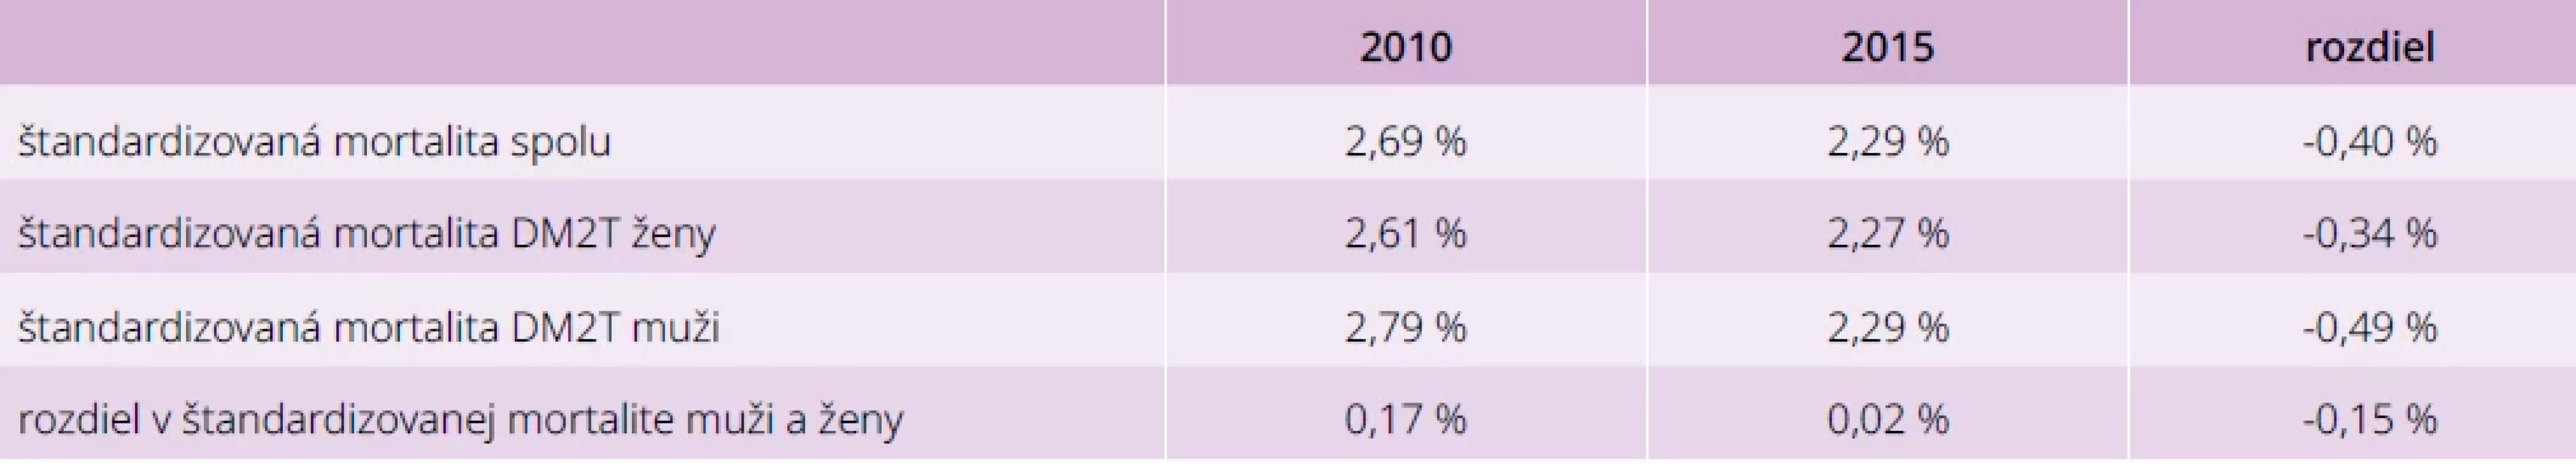 Mortalita pacientov s DM2T u mužov a žien v roku 2010 a 2015 2010